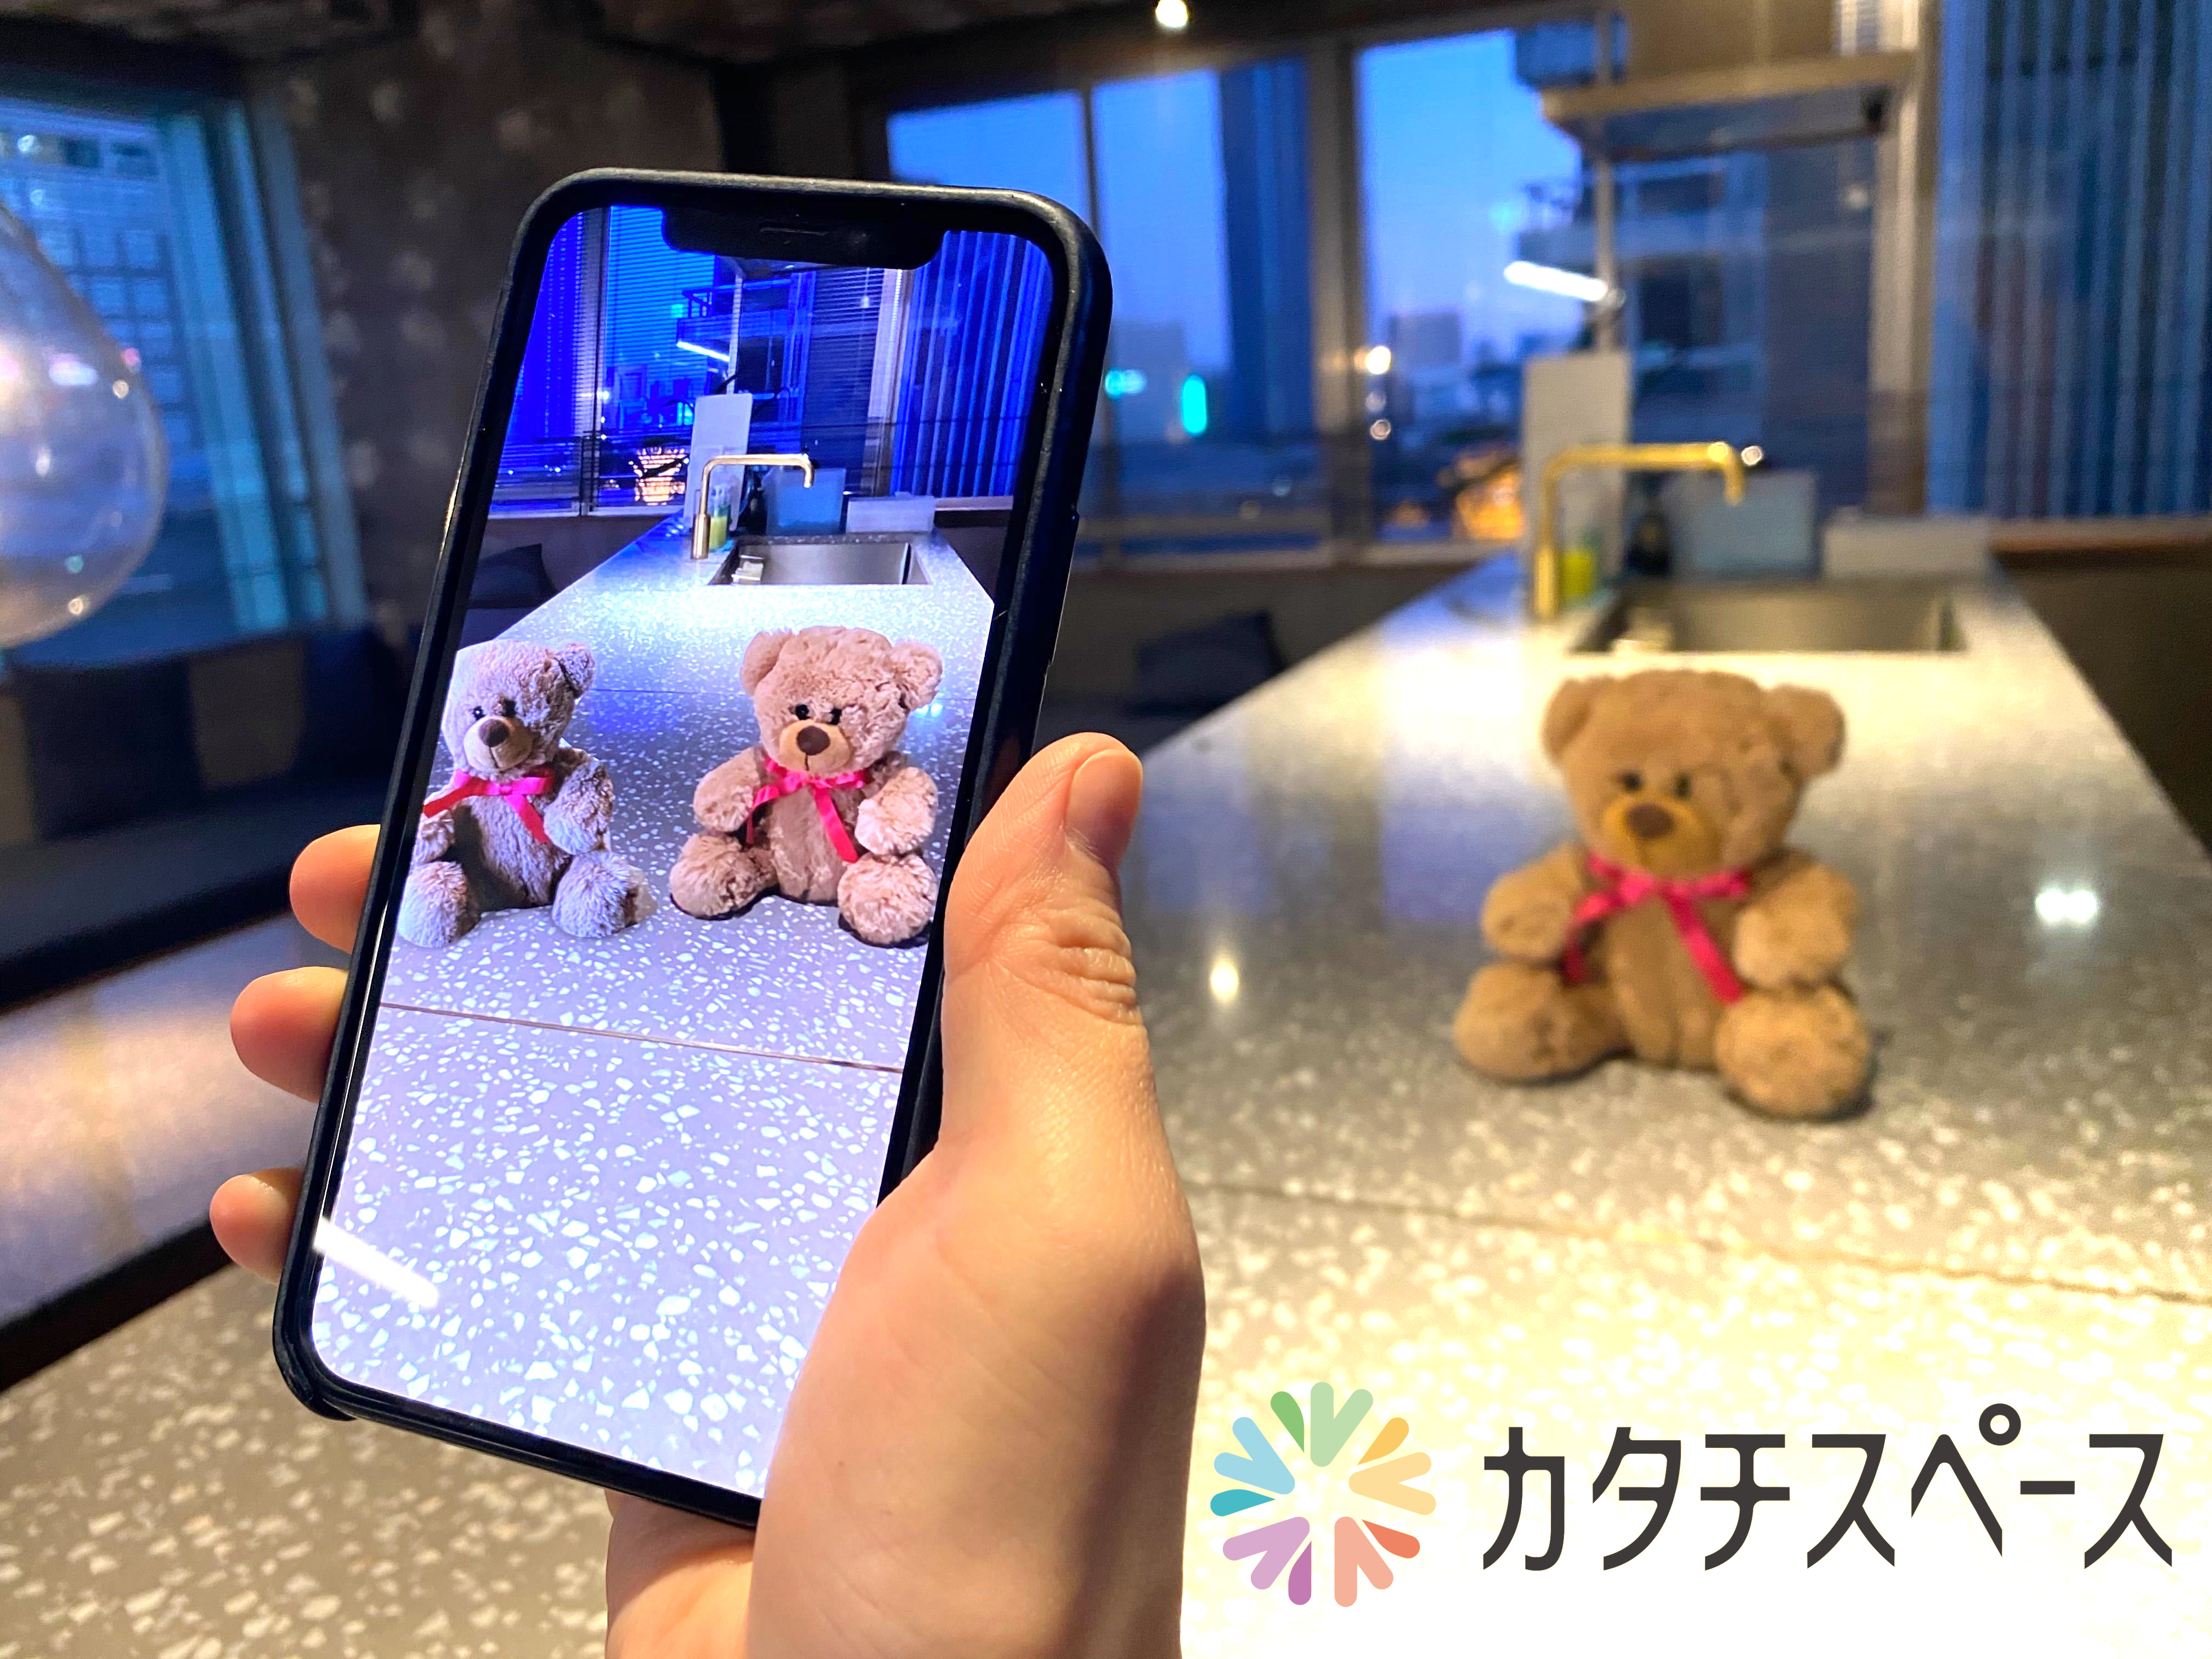 写真を撮る感覚で3dを作成 Arで表示 カタチをシェア カタチスペース アプリをリリース 株式会社カシカのプレスリリース